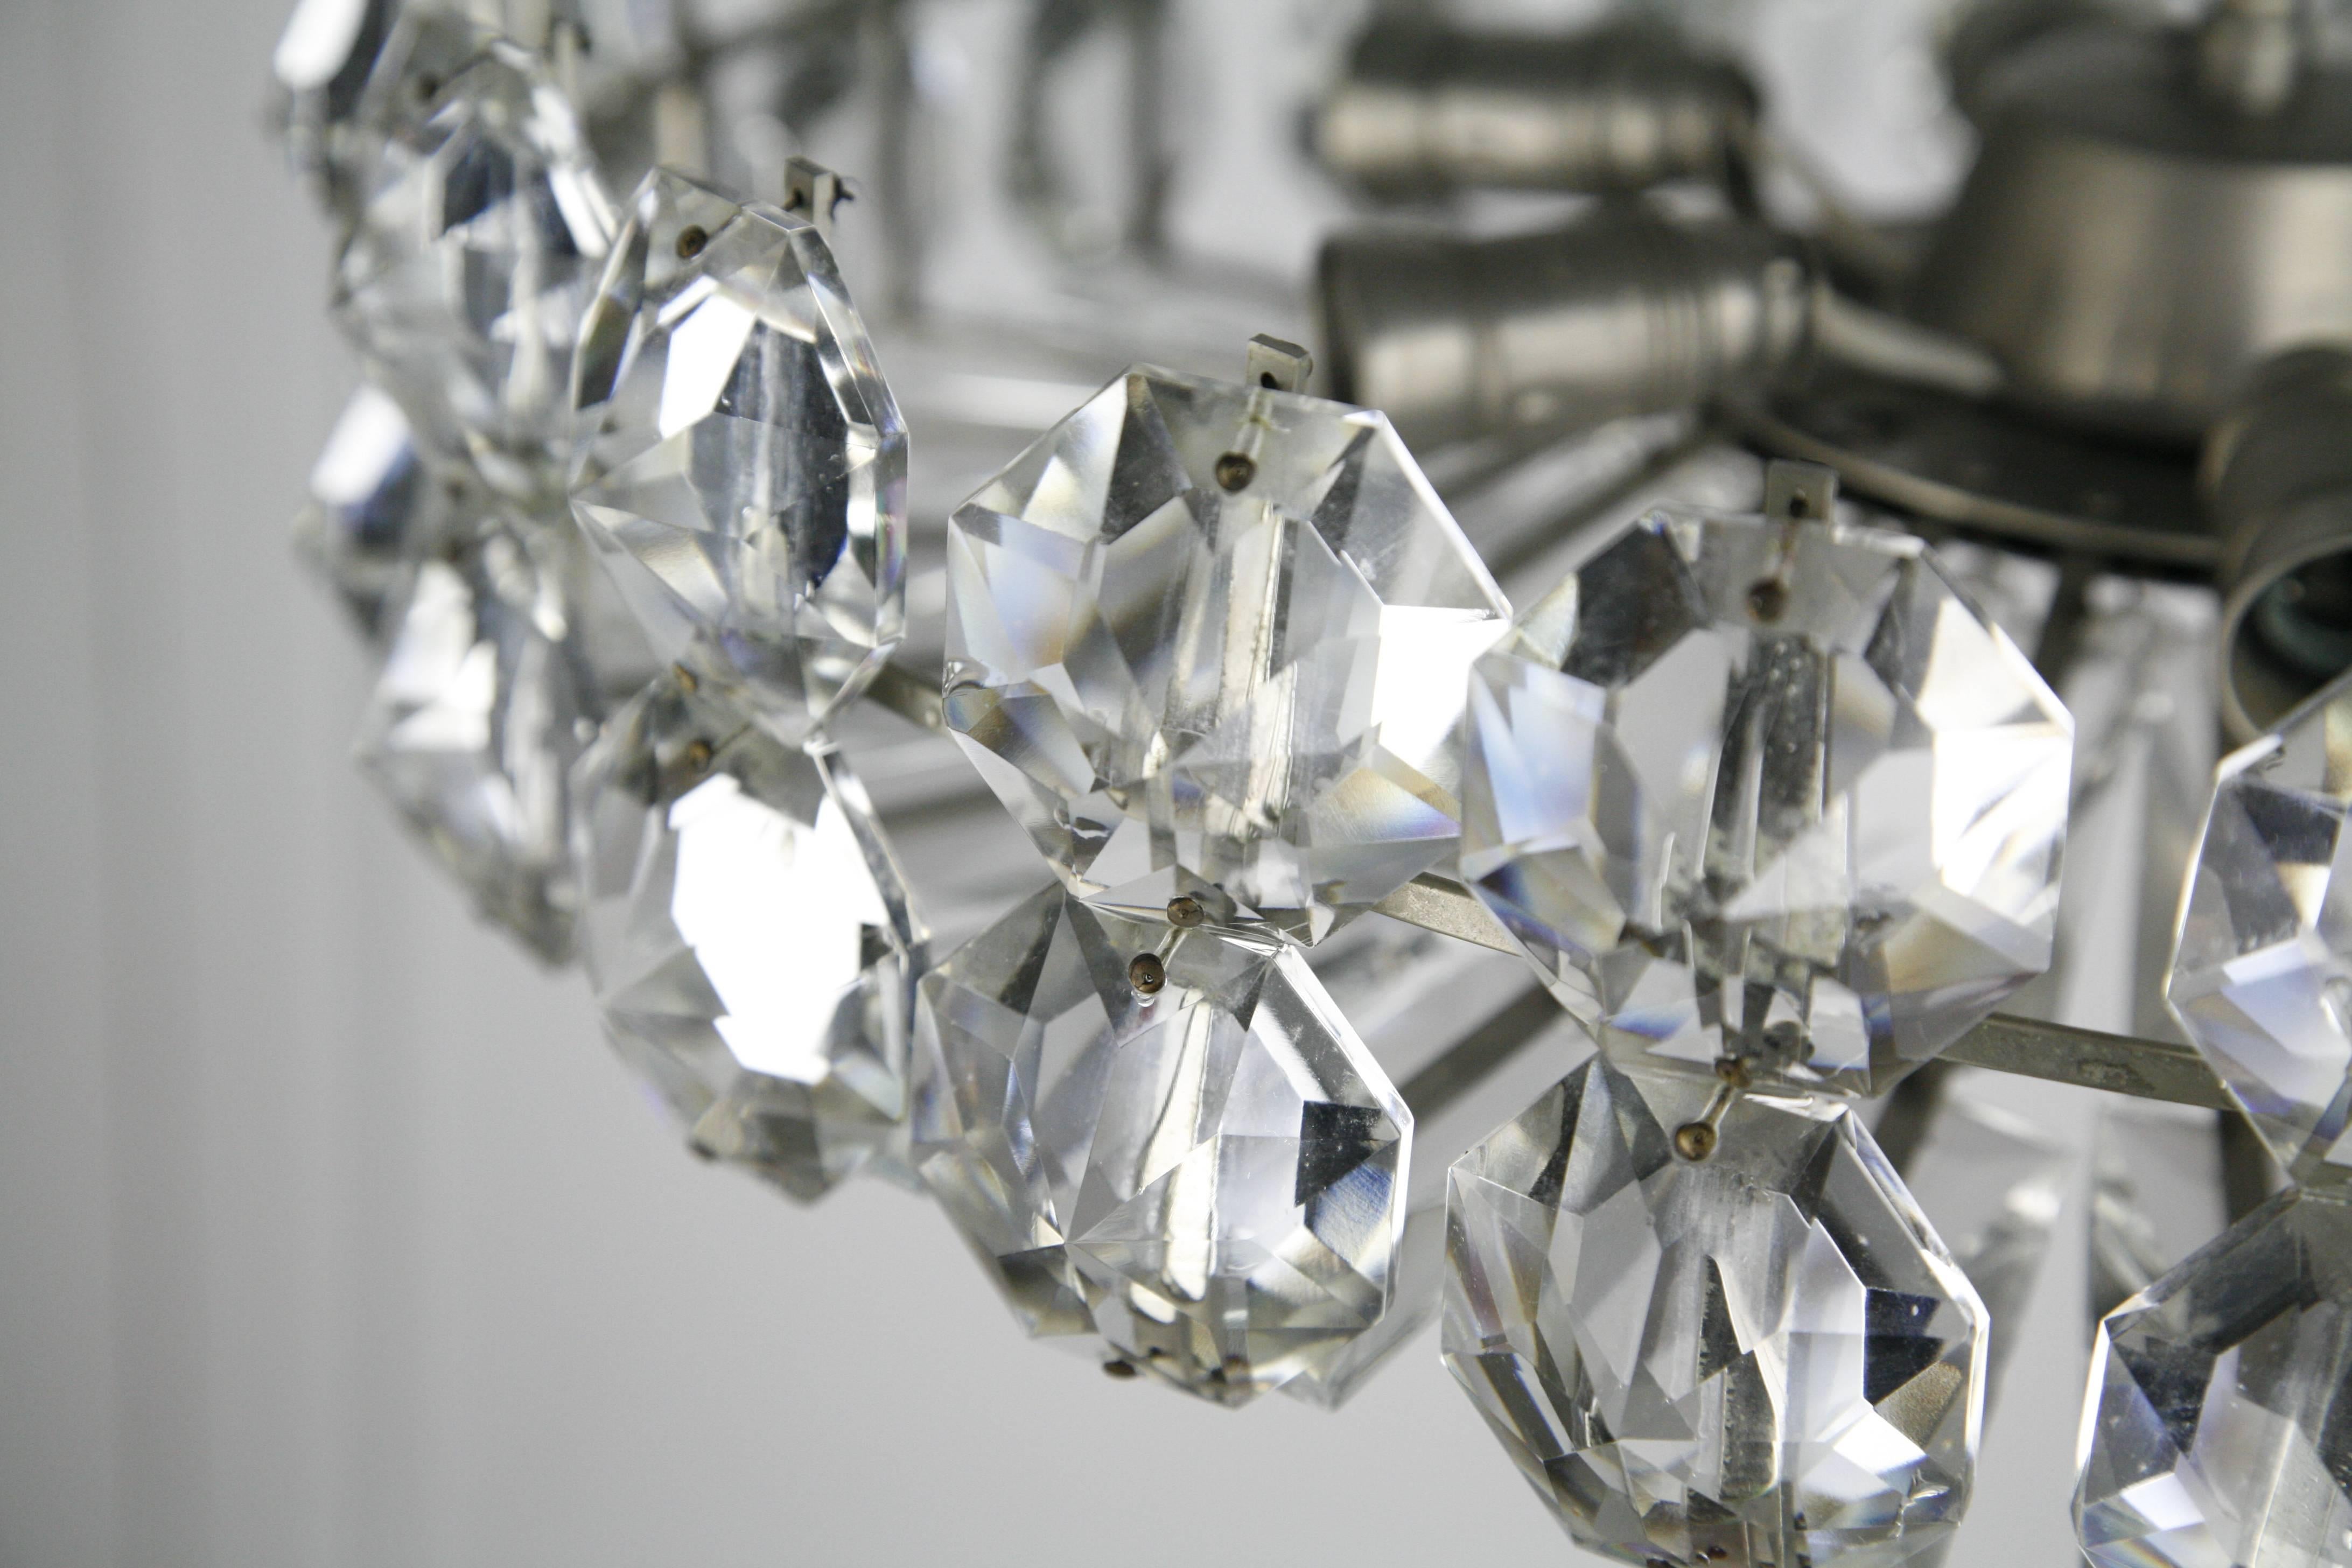 Austrian Bakalowits Chandelier Austria, 1960, Diamond Cut Crystal on a Chrome Frame